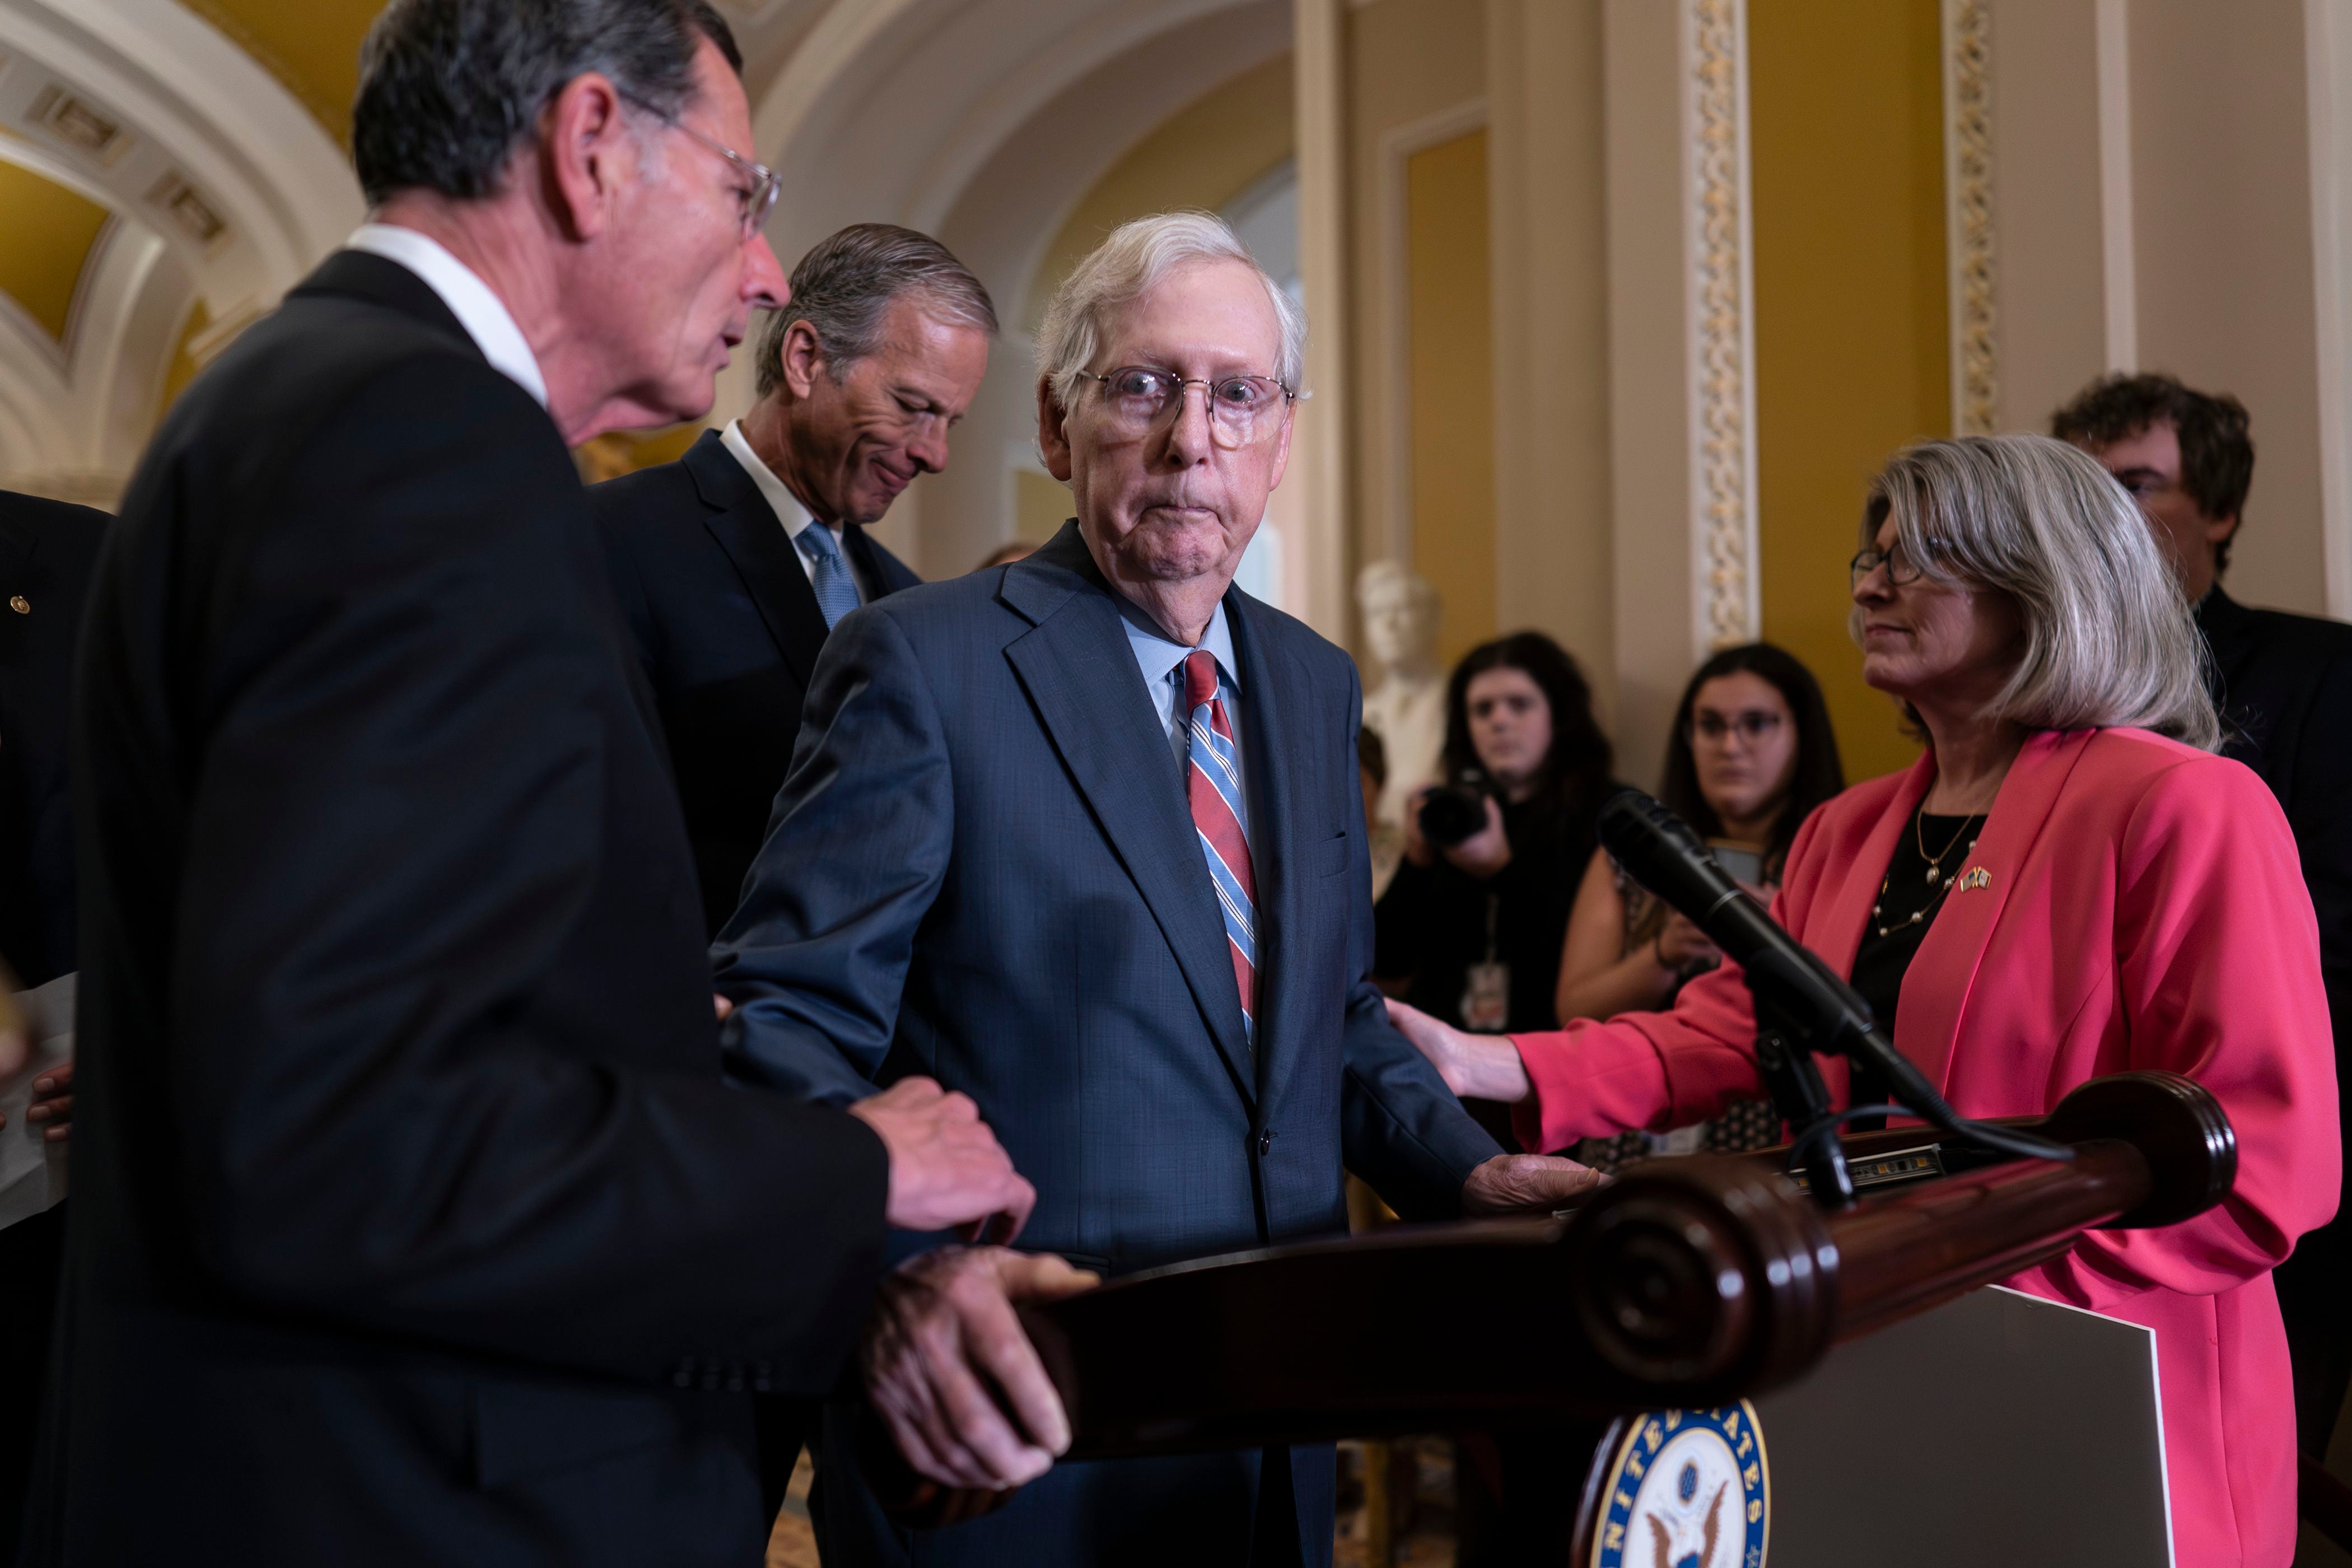 El republicano Mitch McConnell, destacada figura de su partido en el Senado estadounidense, despertó inquietudes sobre su salud tras quedar paralizado en una conferencia de prensa en el Capitolio. (AP)